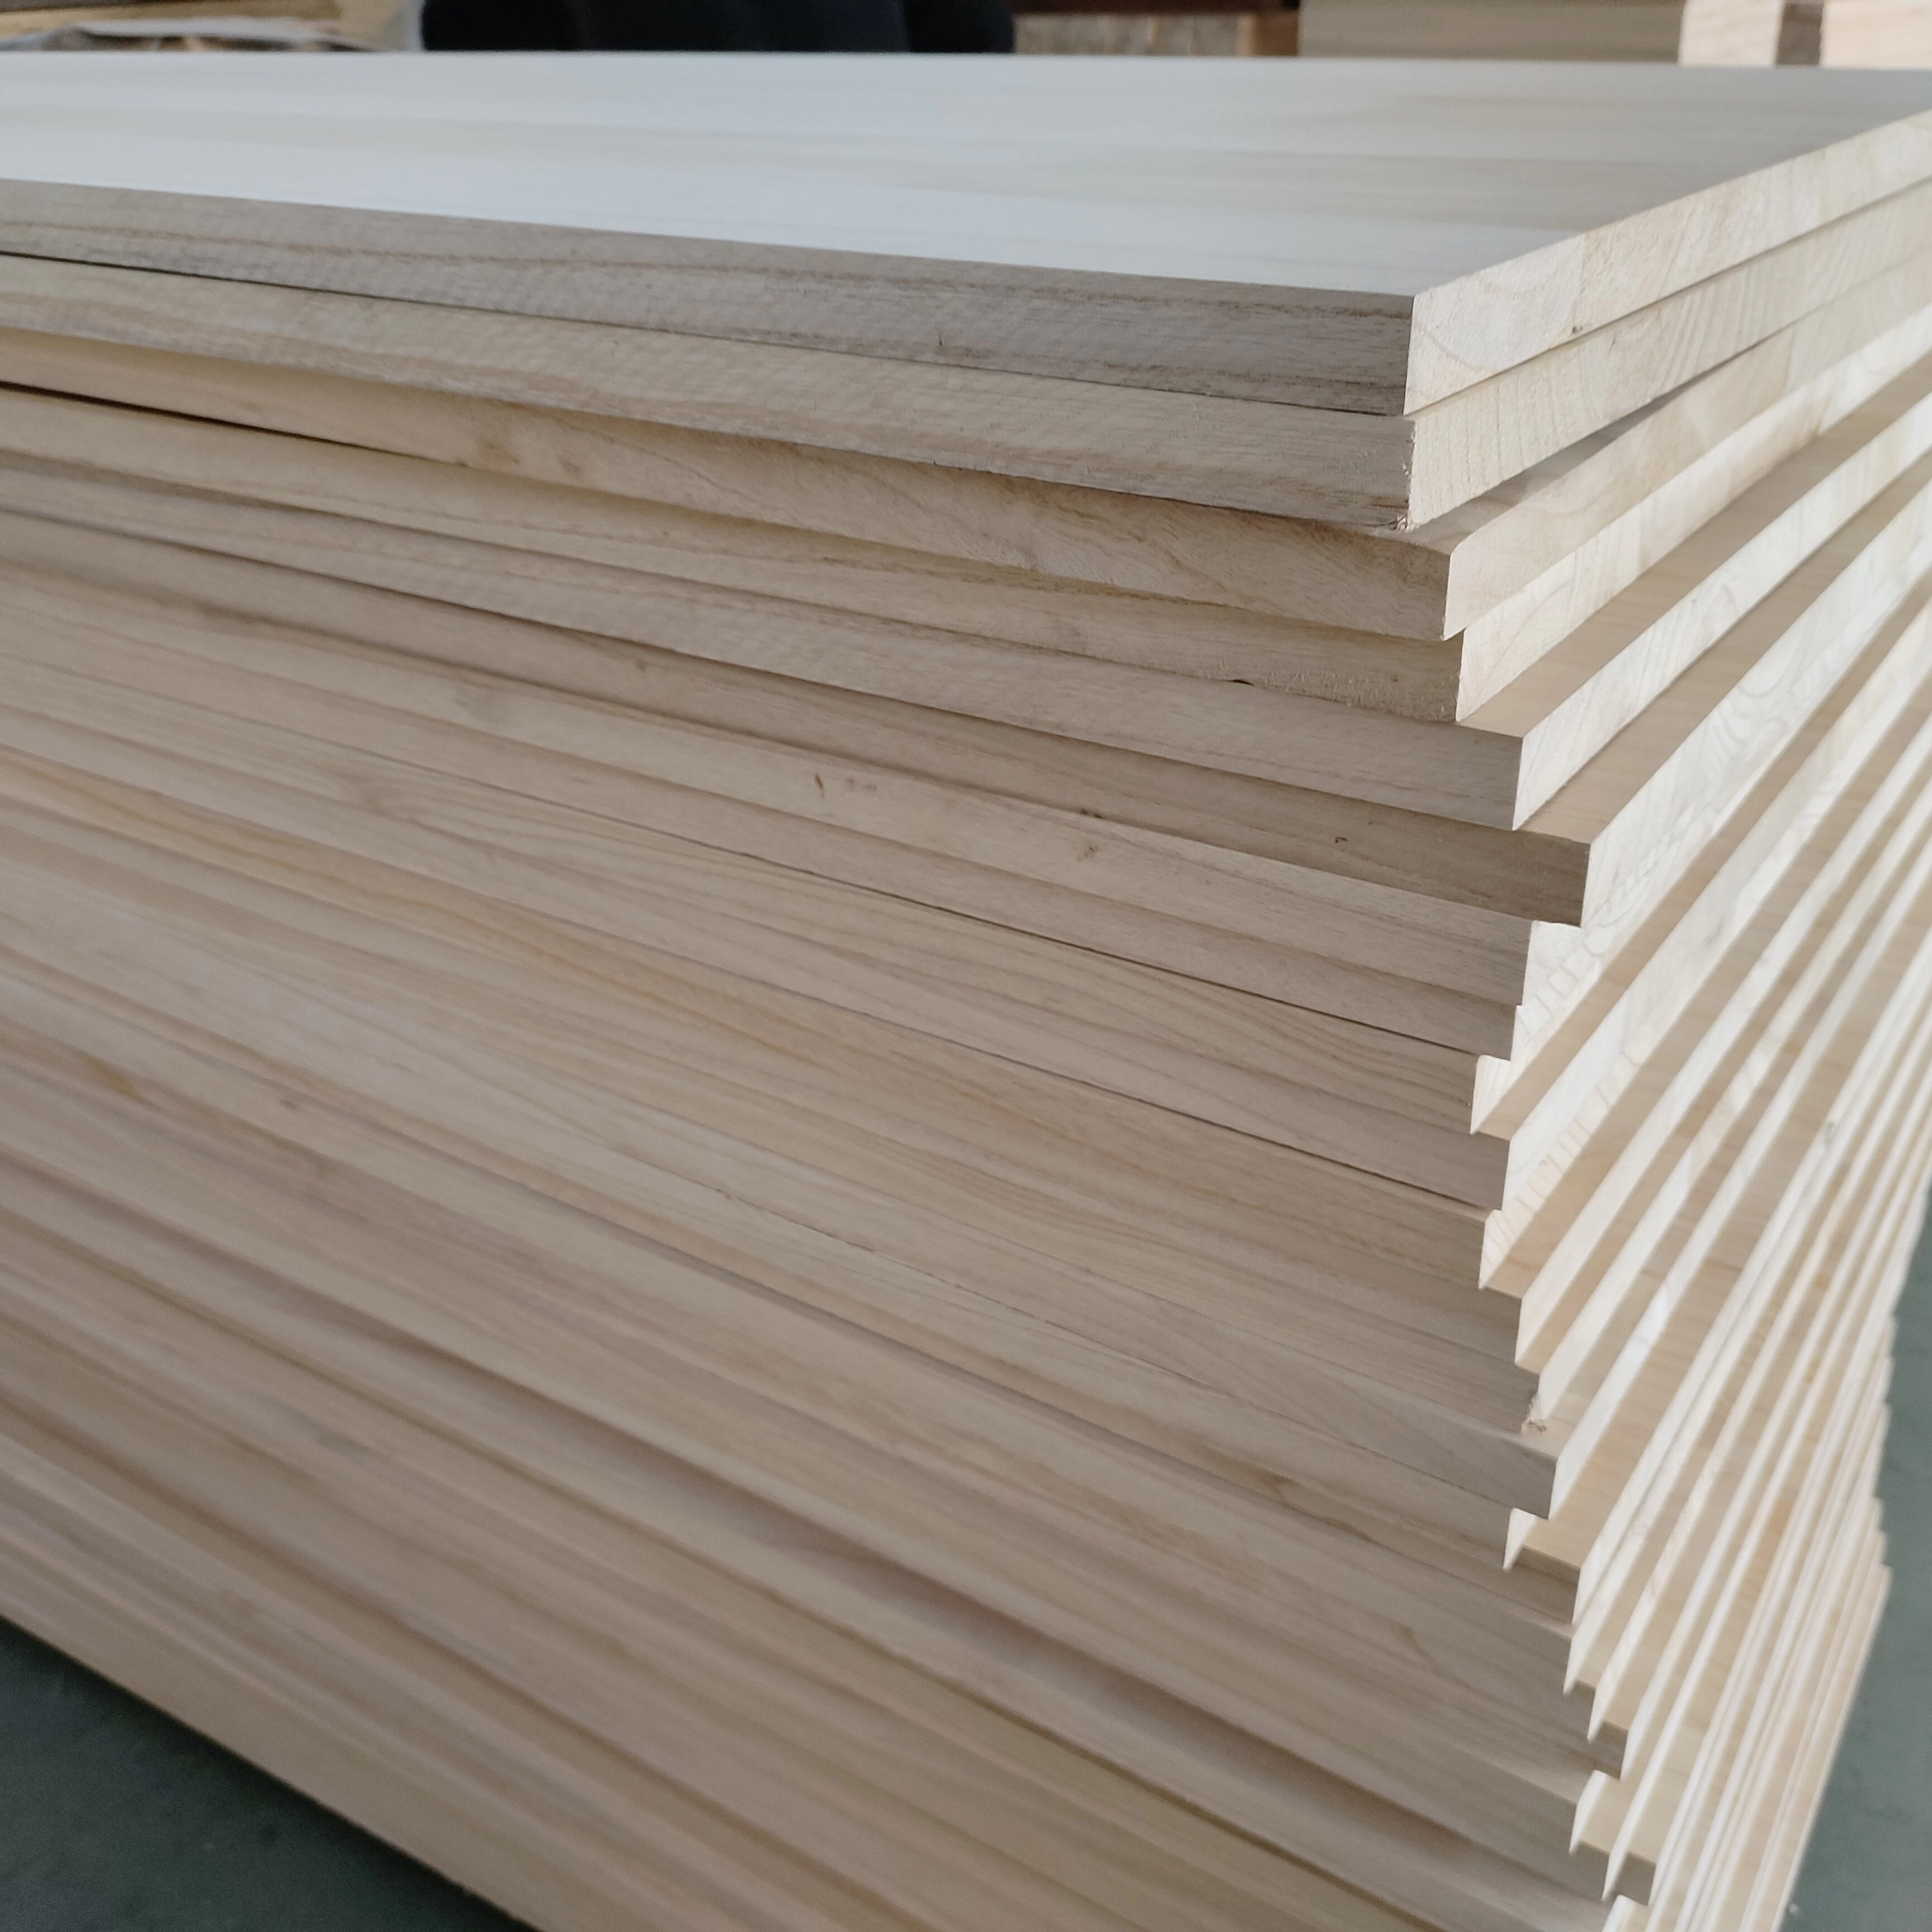 Le bois de Paulownia est à la pointe des nouvelles tendances sur le marché du meuble haut de gamme